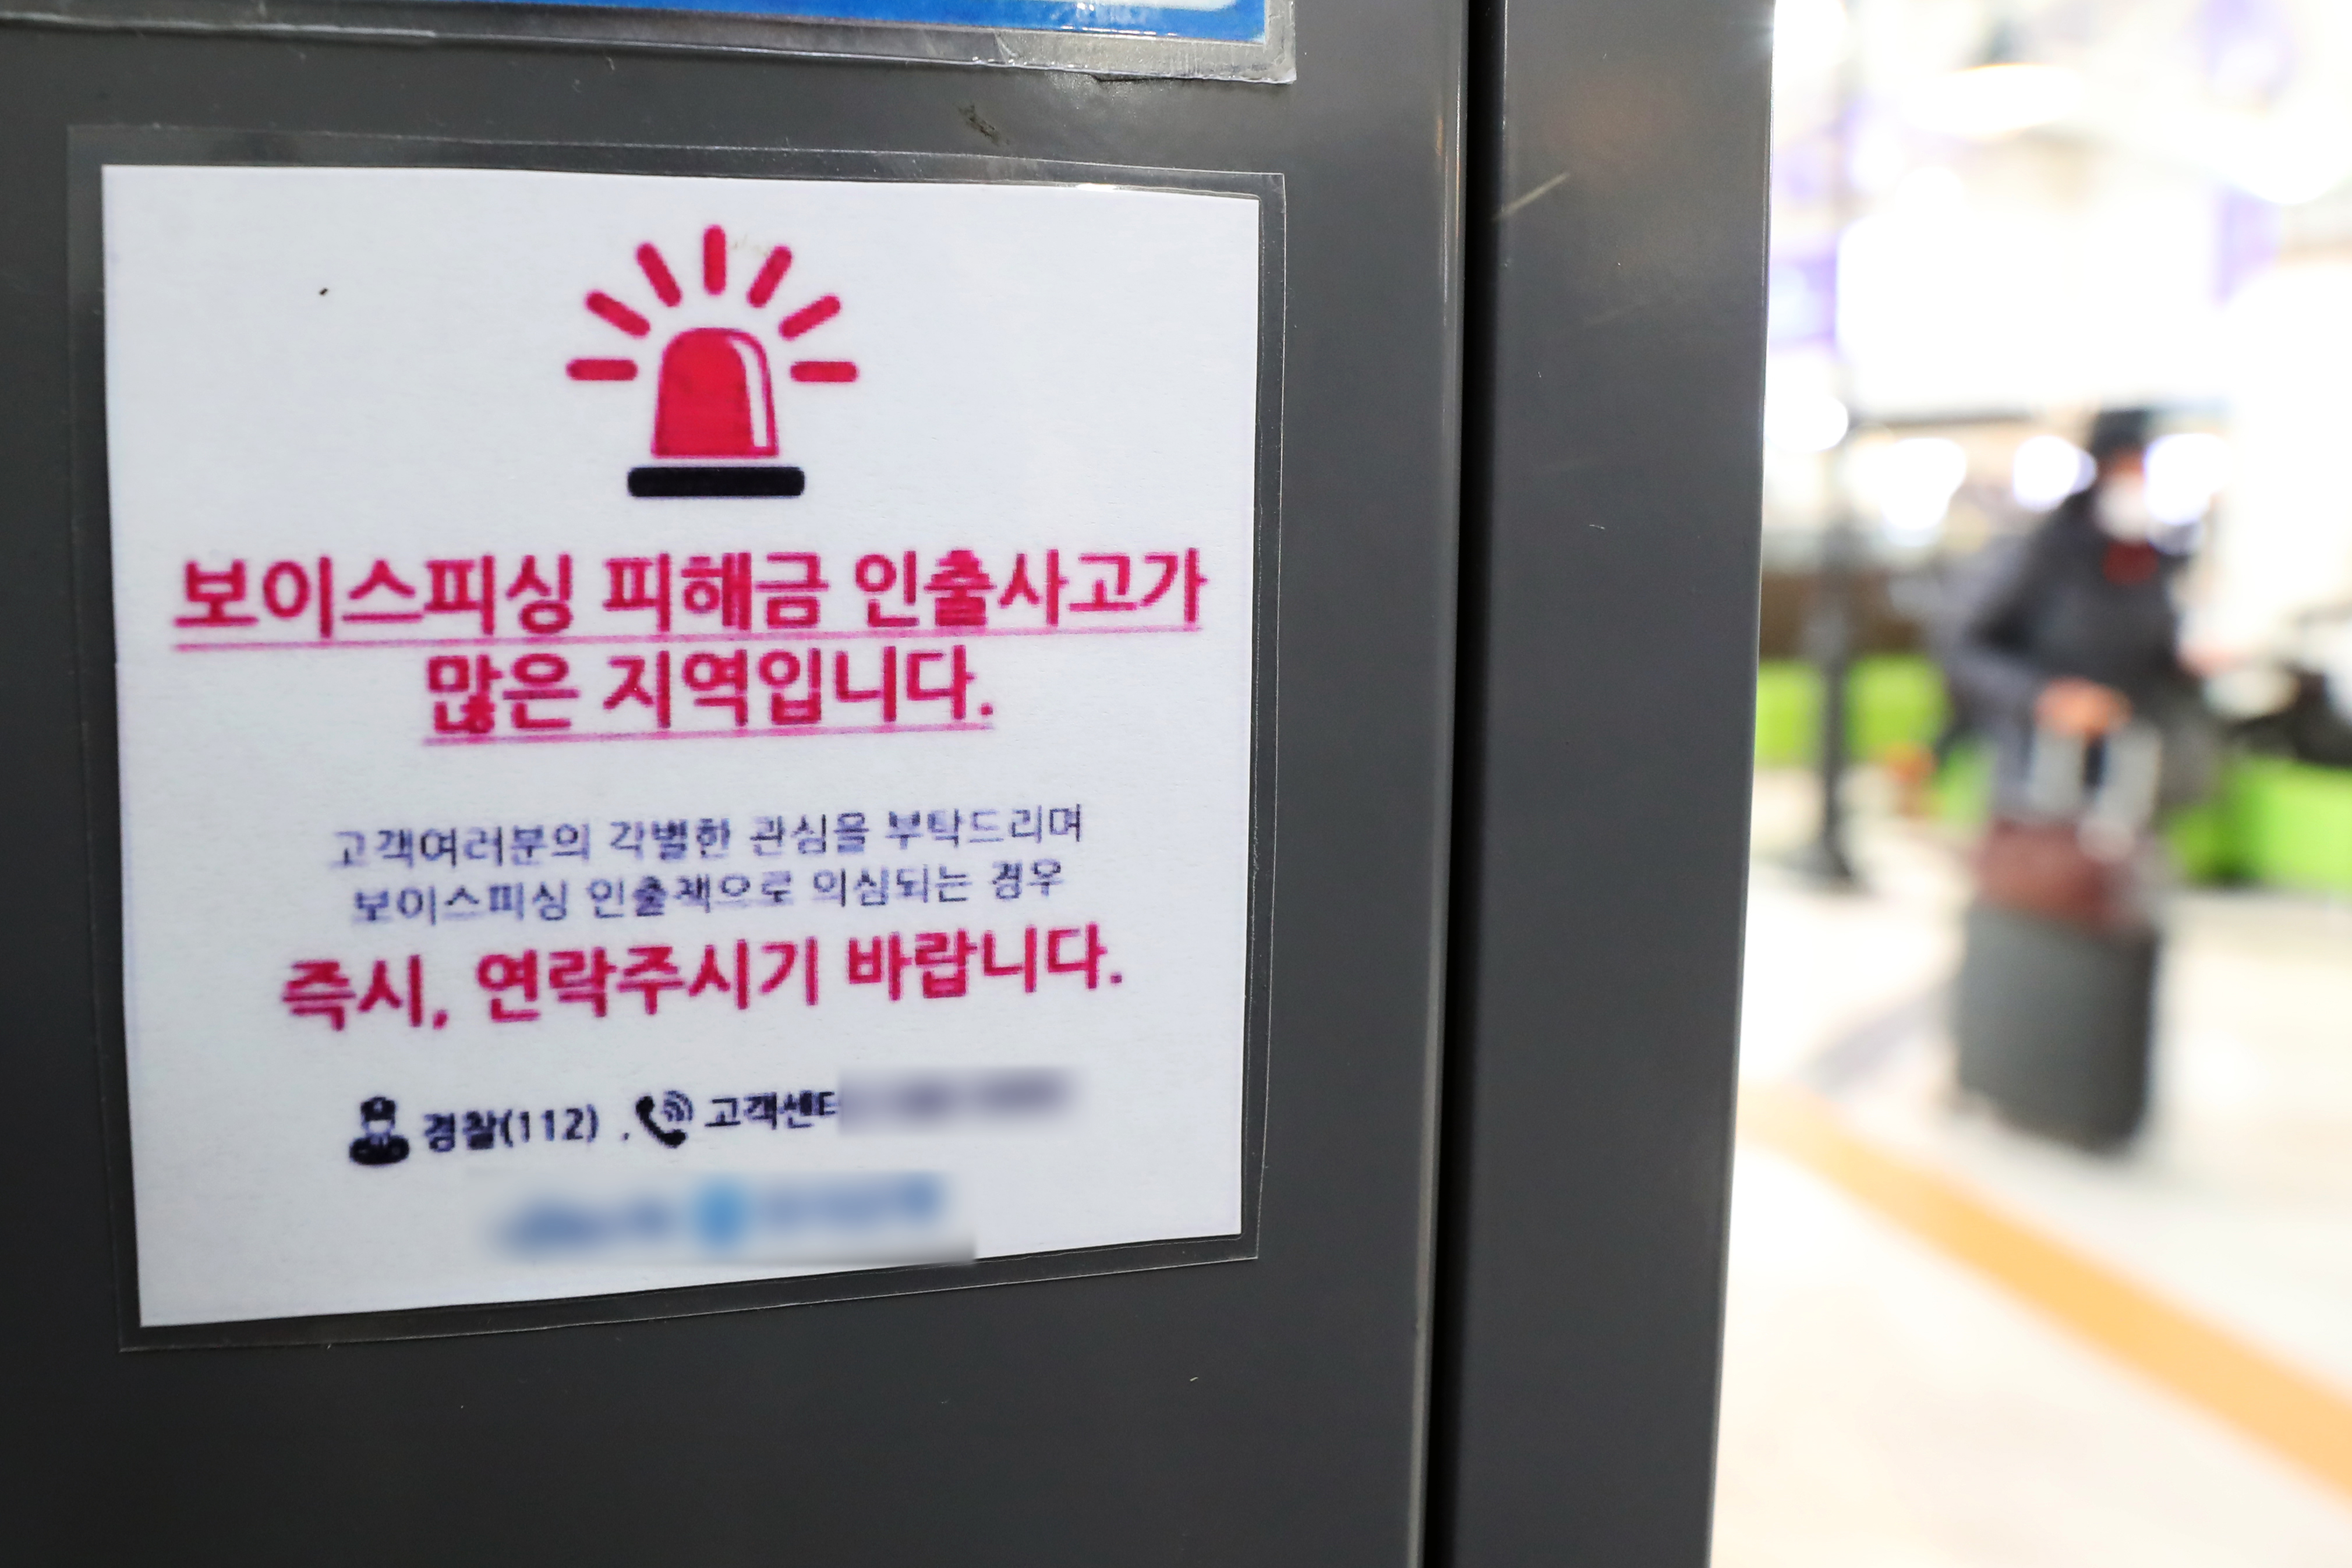 서울 시내 한 건물에 설치된 은행의 현금인출기(ATM)에 붙혀진 ‘보이스피싱 주의 안내문’. 2022.12.27 뉴스1